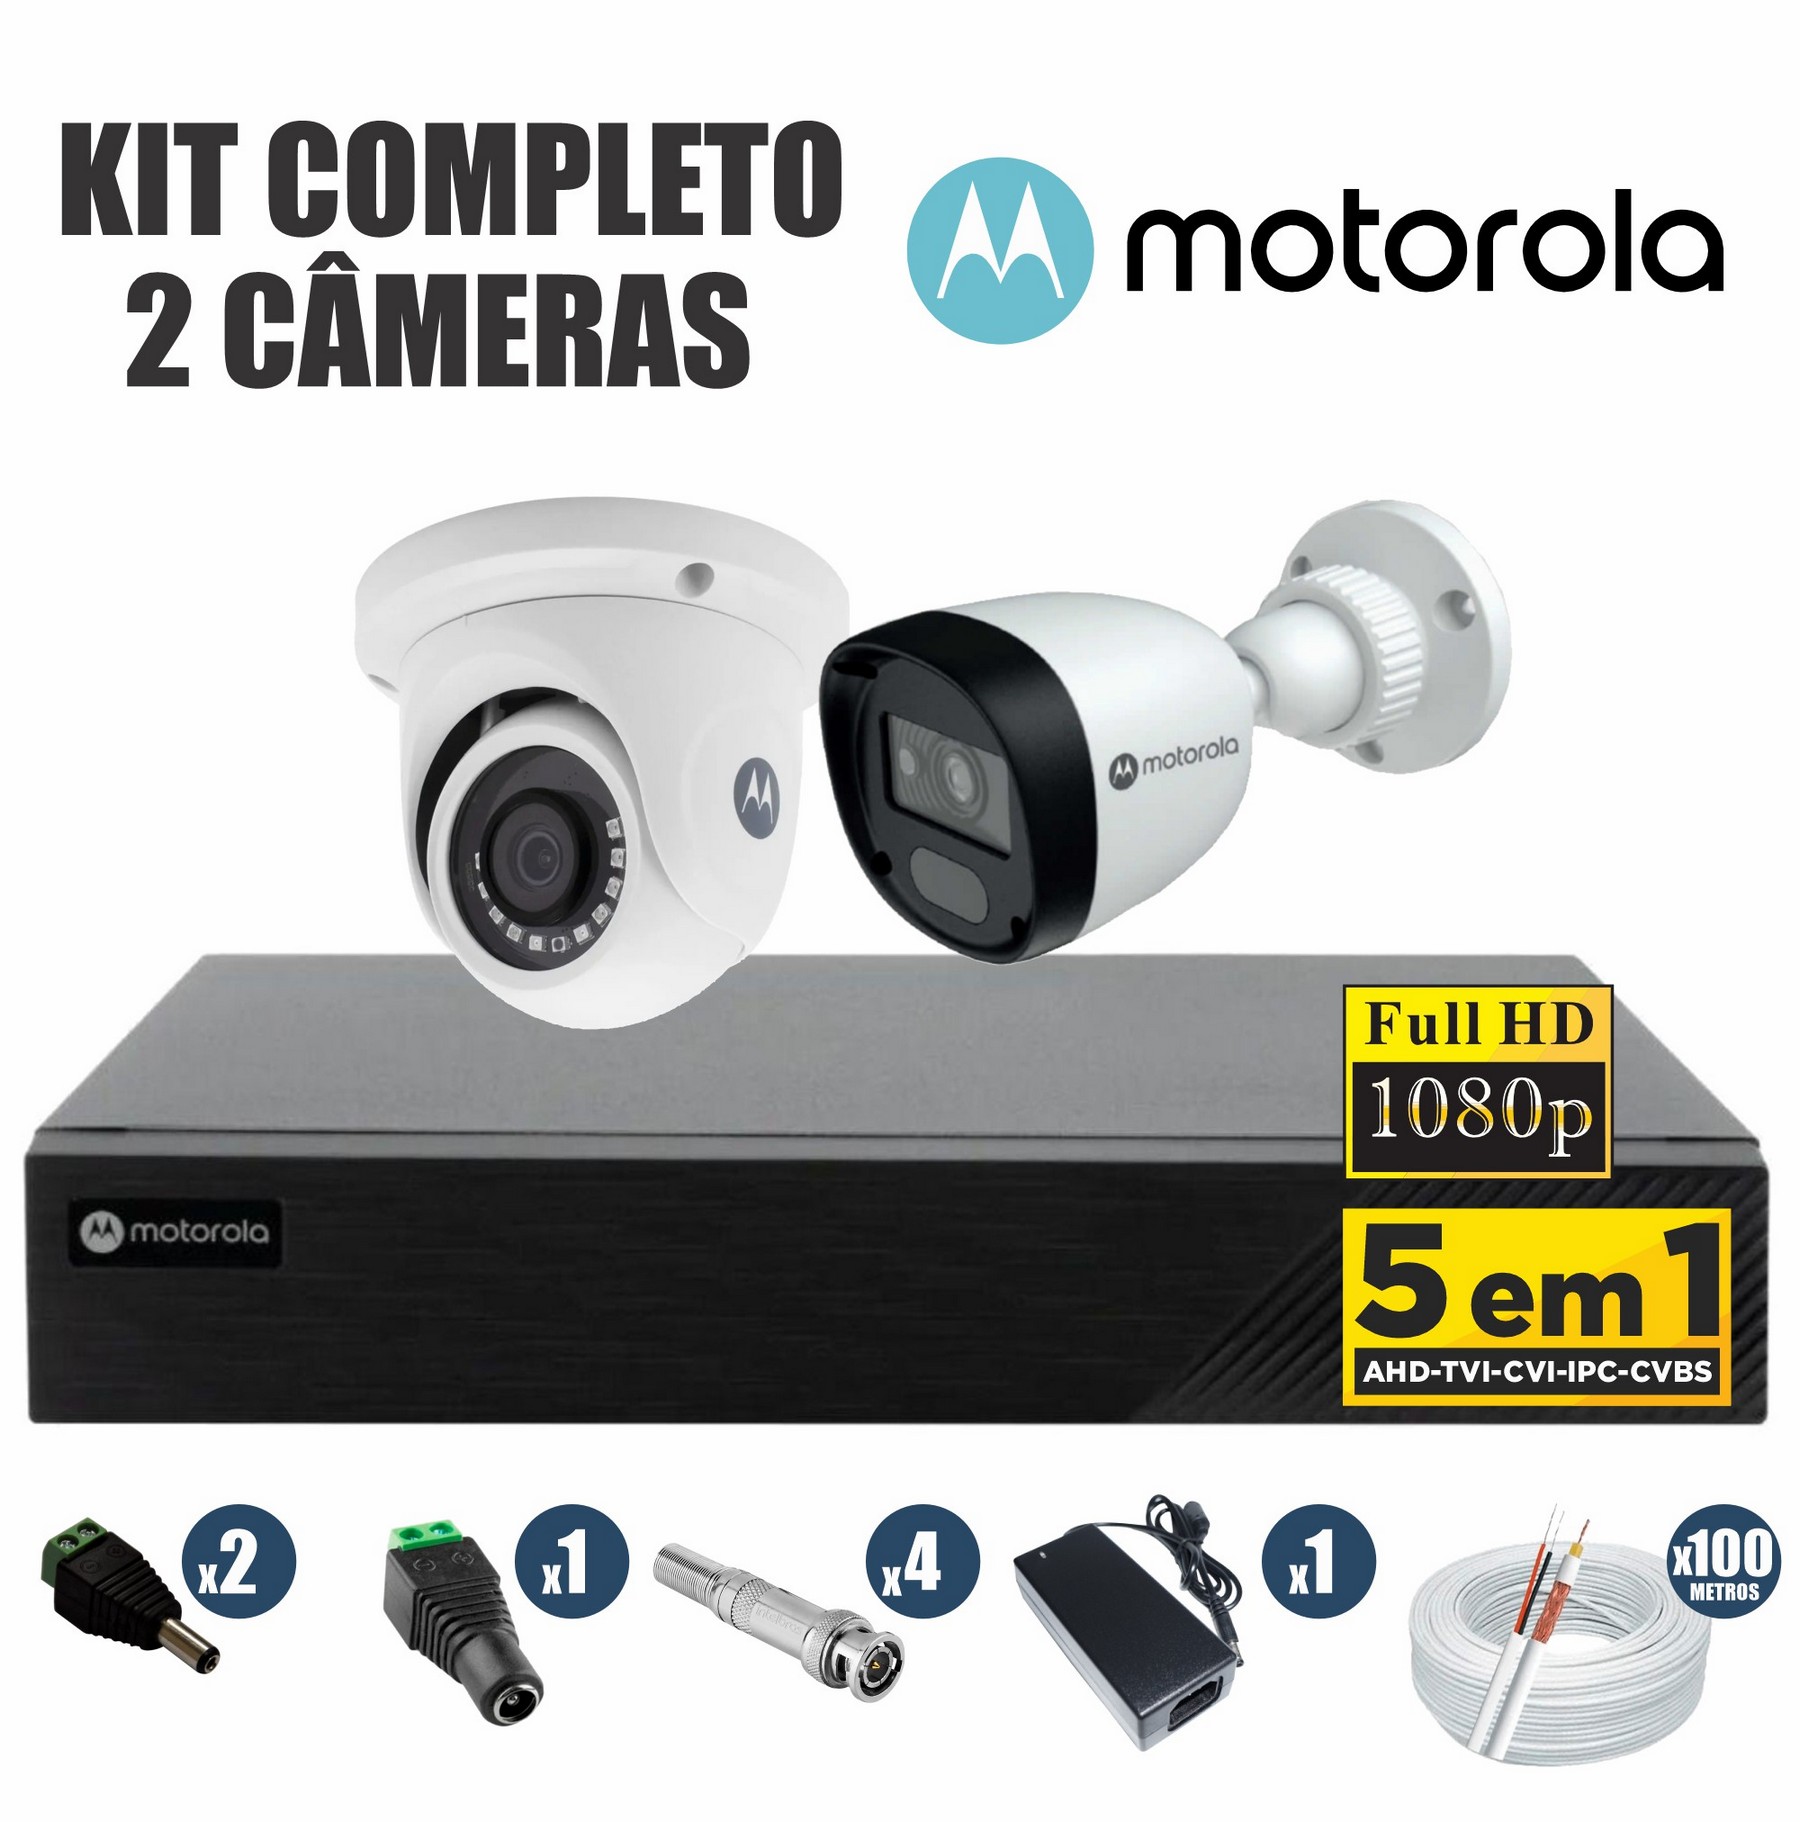 Kit CFTV Motorola Completo 2 Câmeras AHD 720p DVR 4 Canais